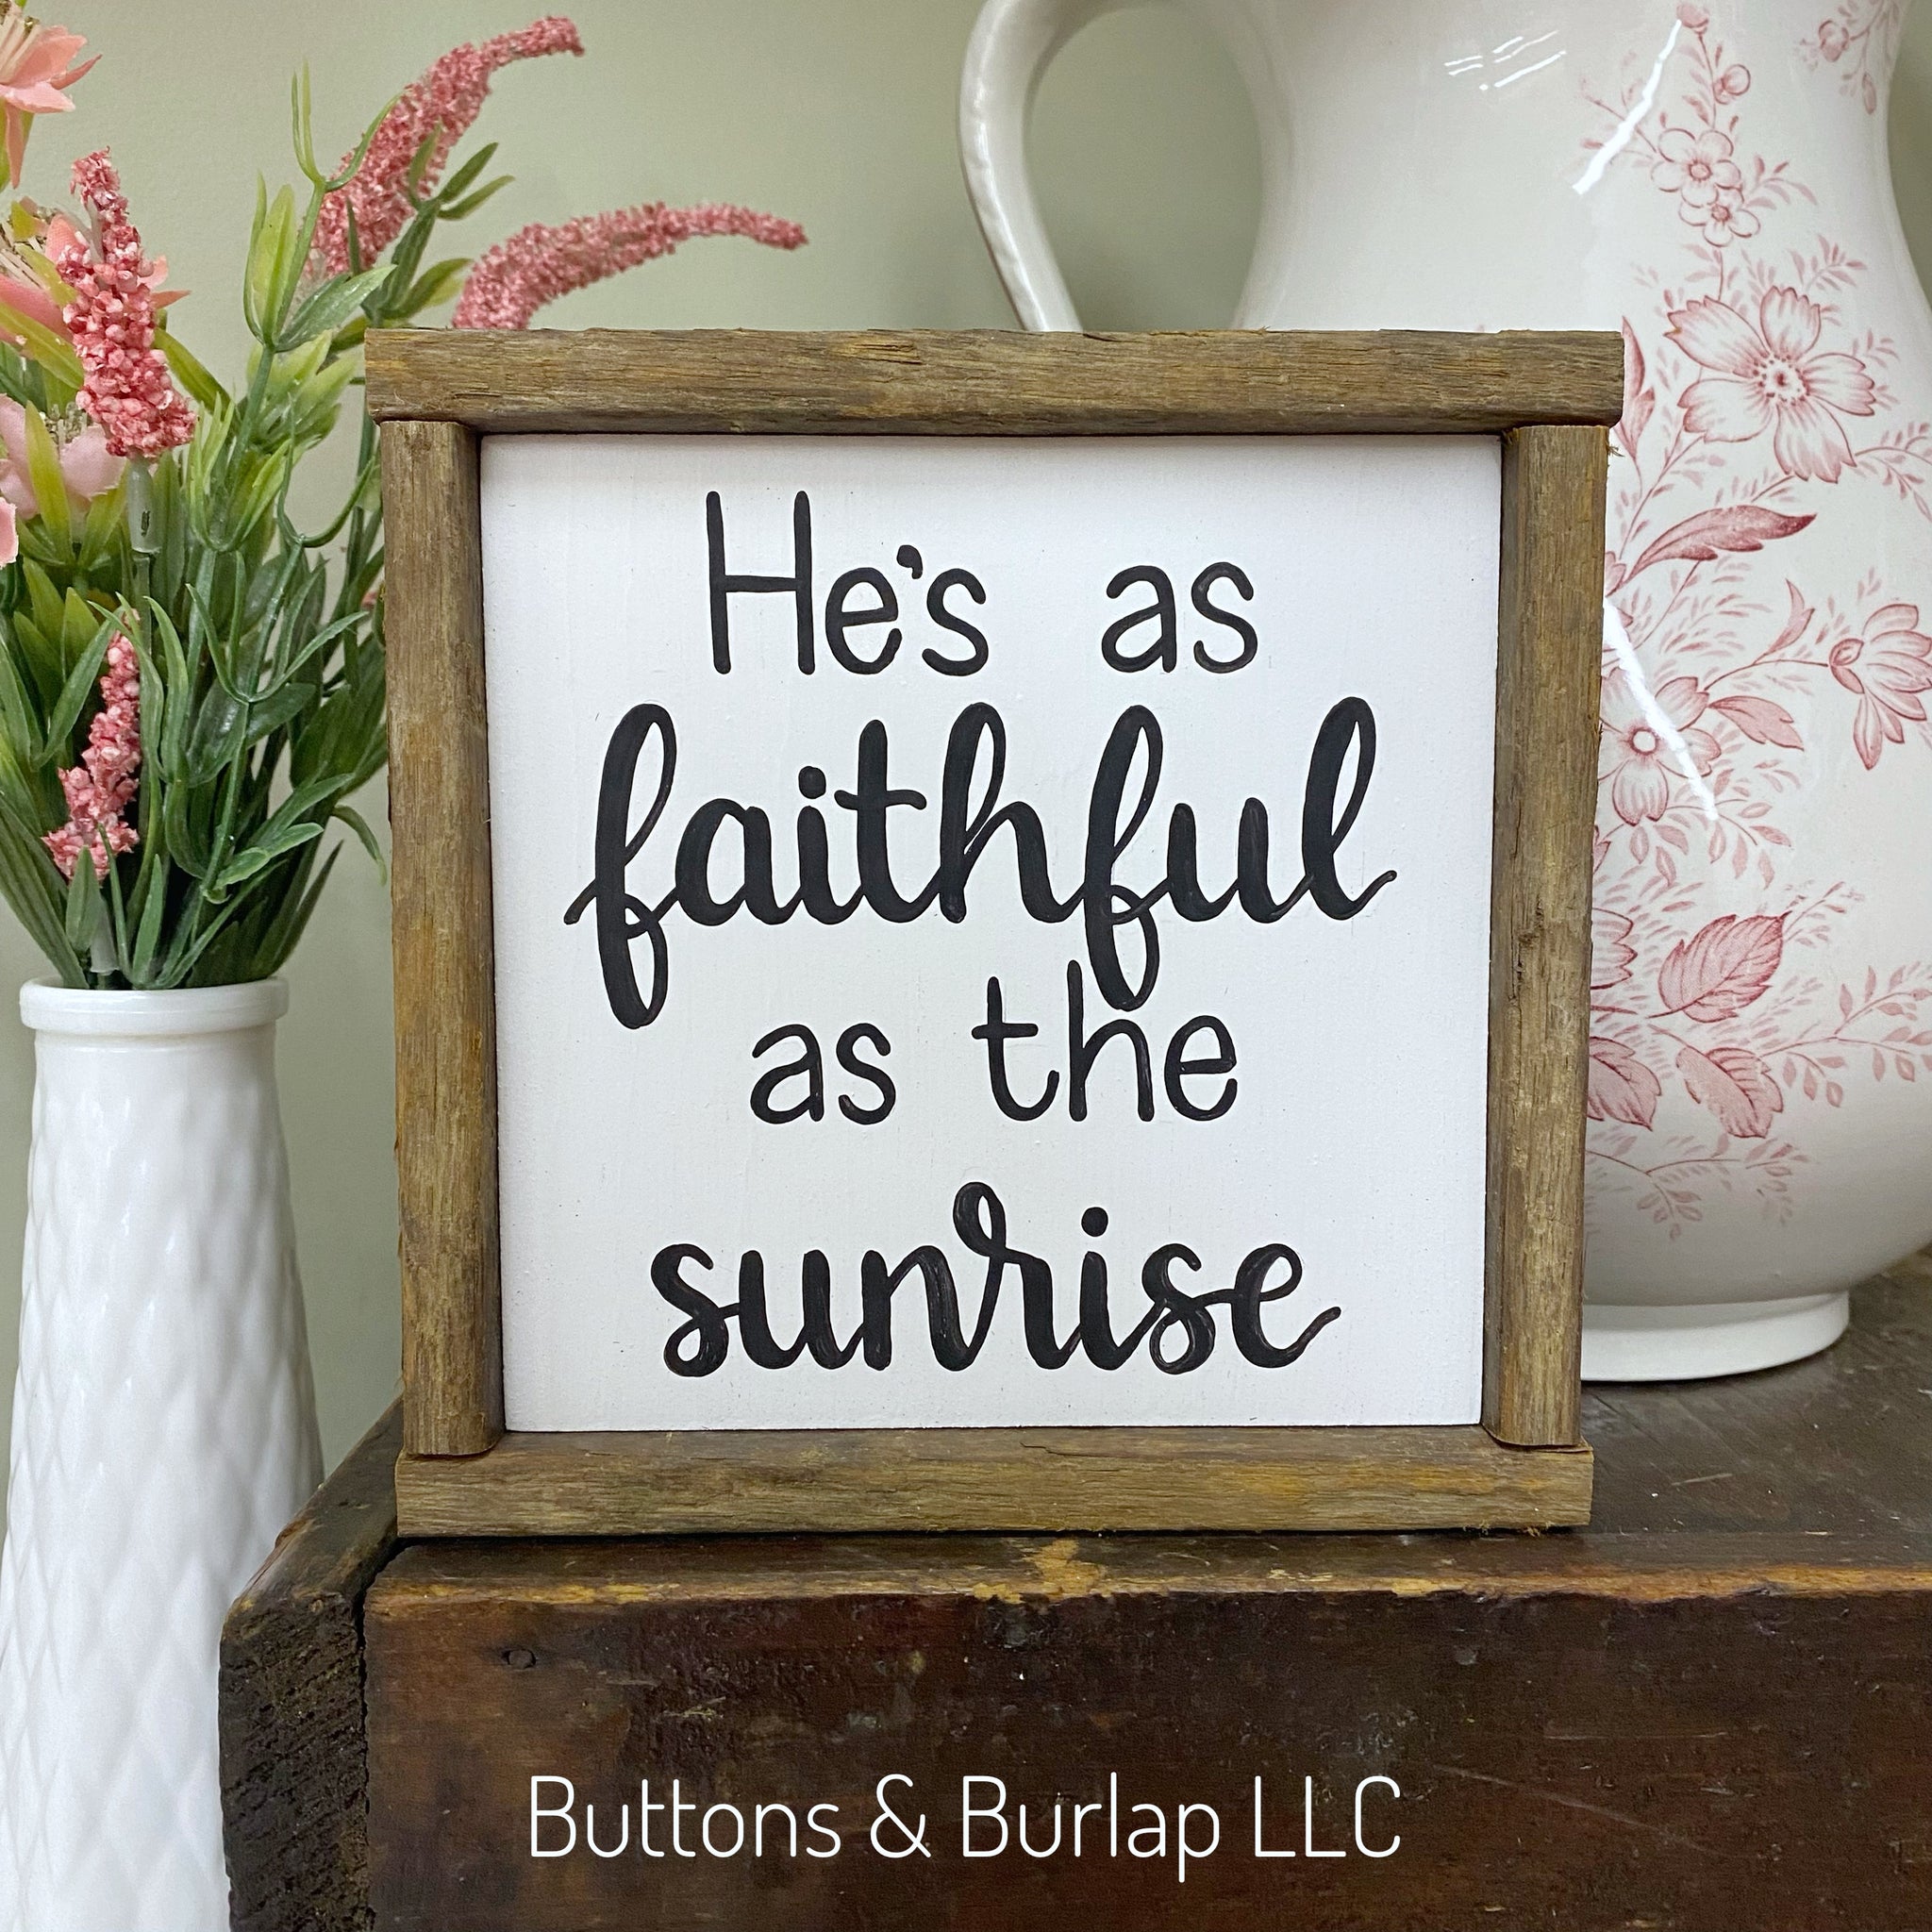 He’s as faithful as the sunrise